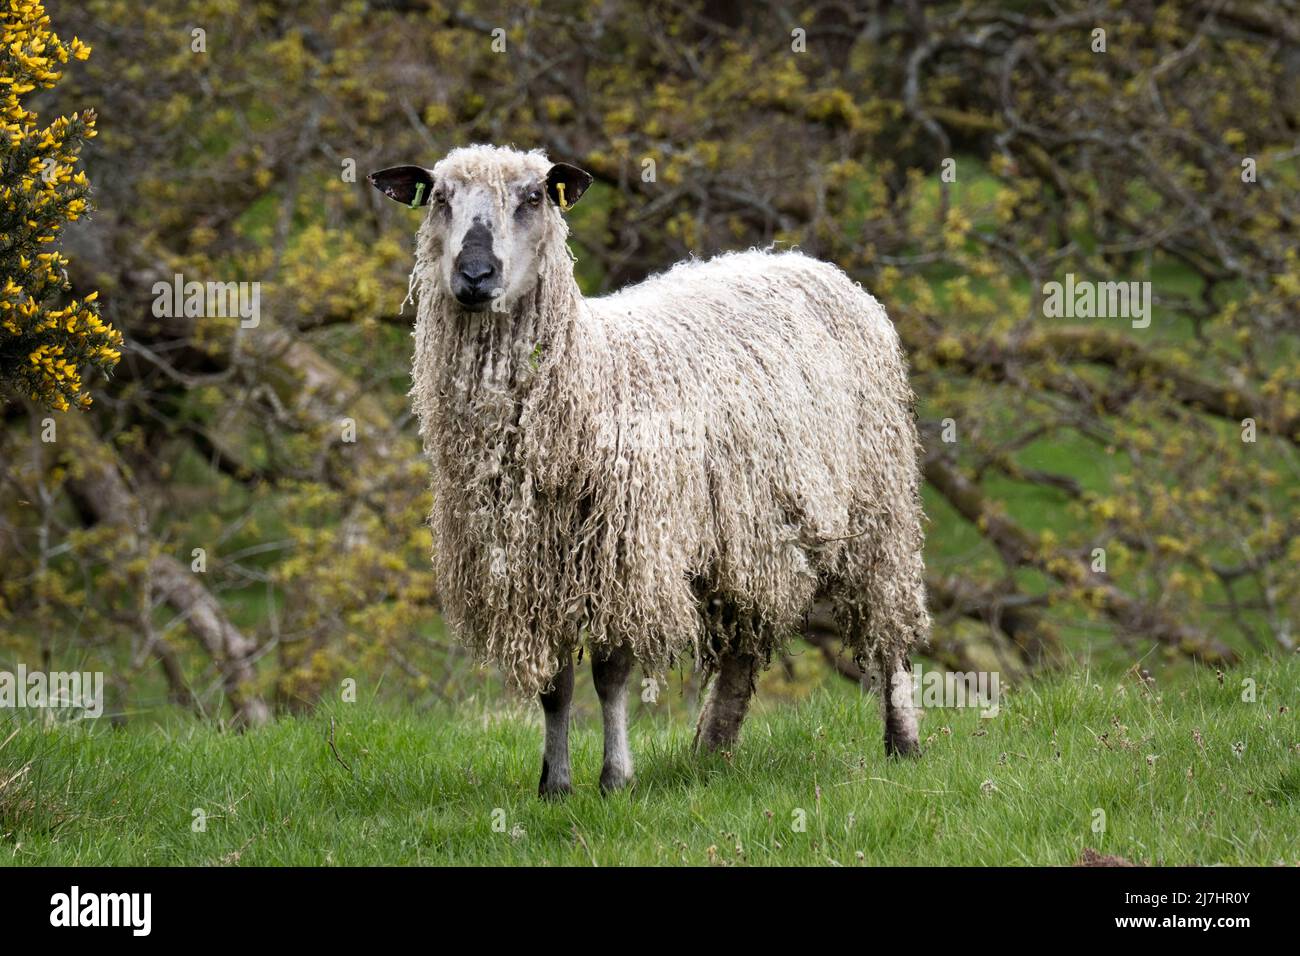 Ein Teeswater ewe, siehe Wray, Lancashire. Die Teeswater ist eine seltene Rasse von Langwolle Schafe ursprünglich aus Teesdale in der Grafschaft Durham. Stockfoto